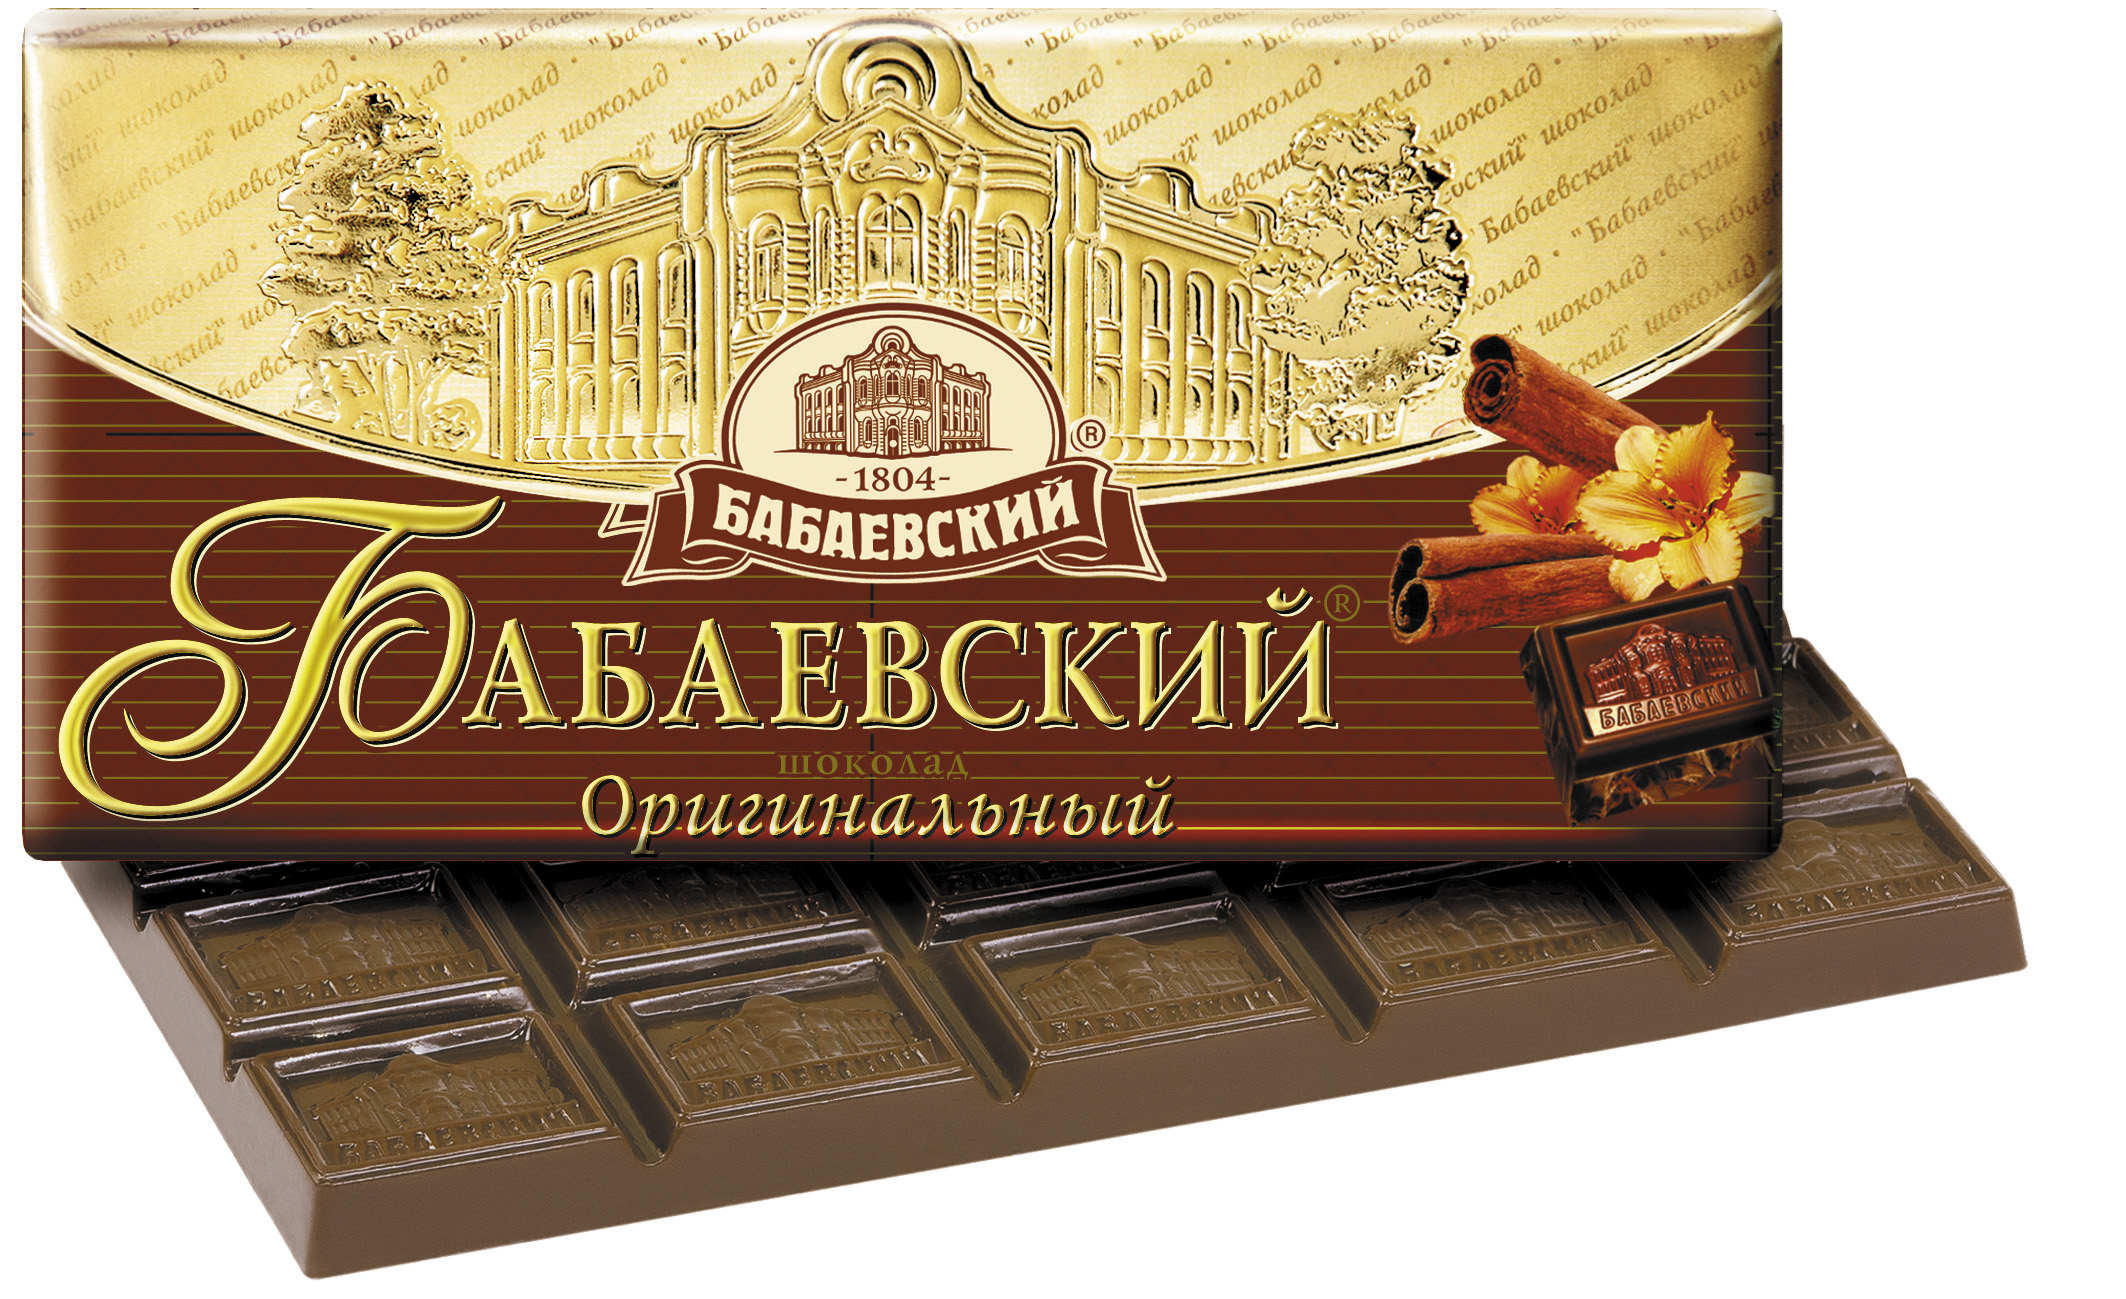 Шоколад Бабаевский оригинальный 100г